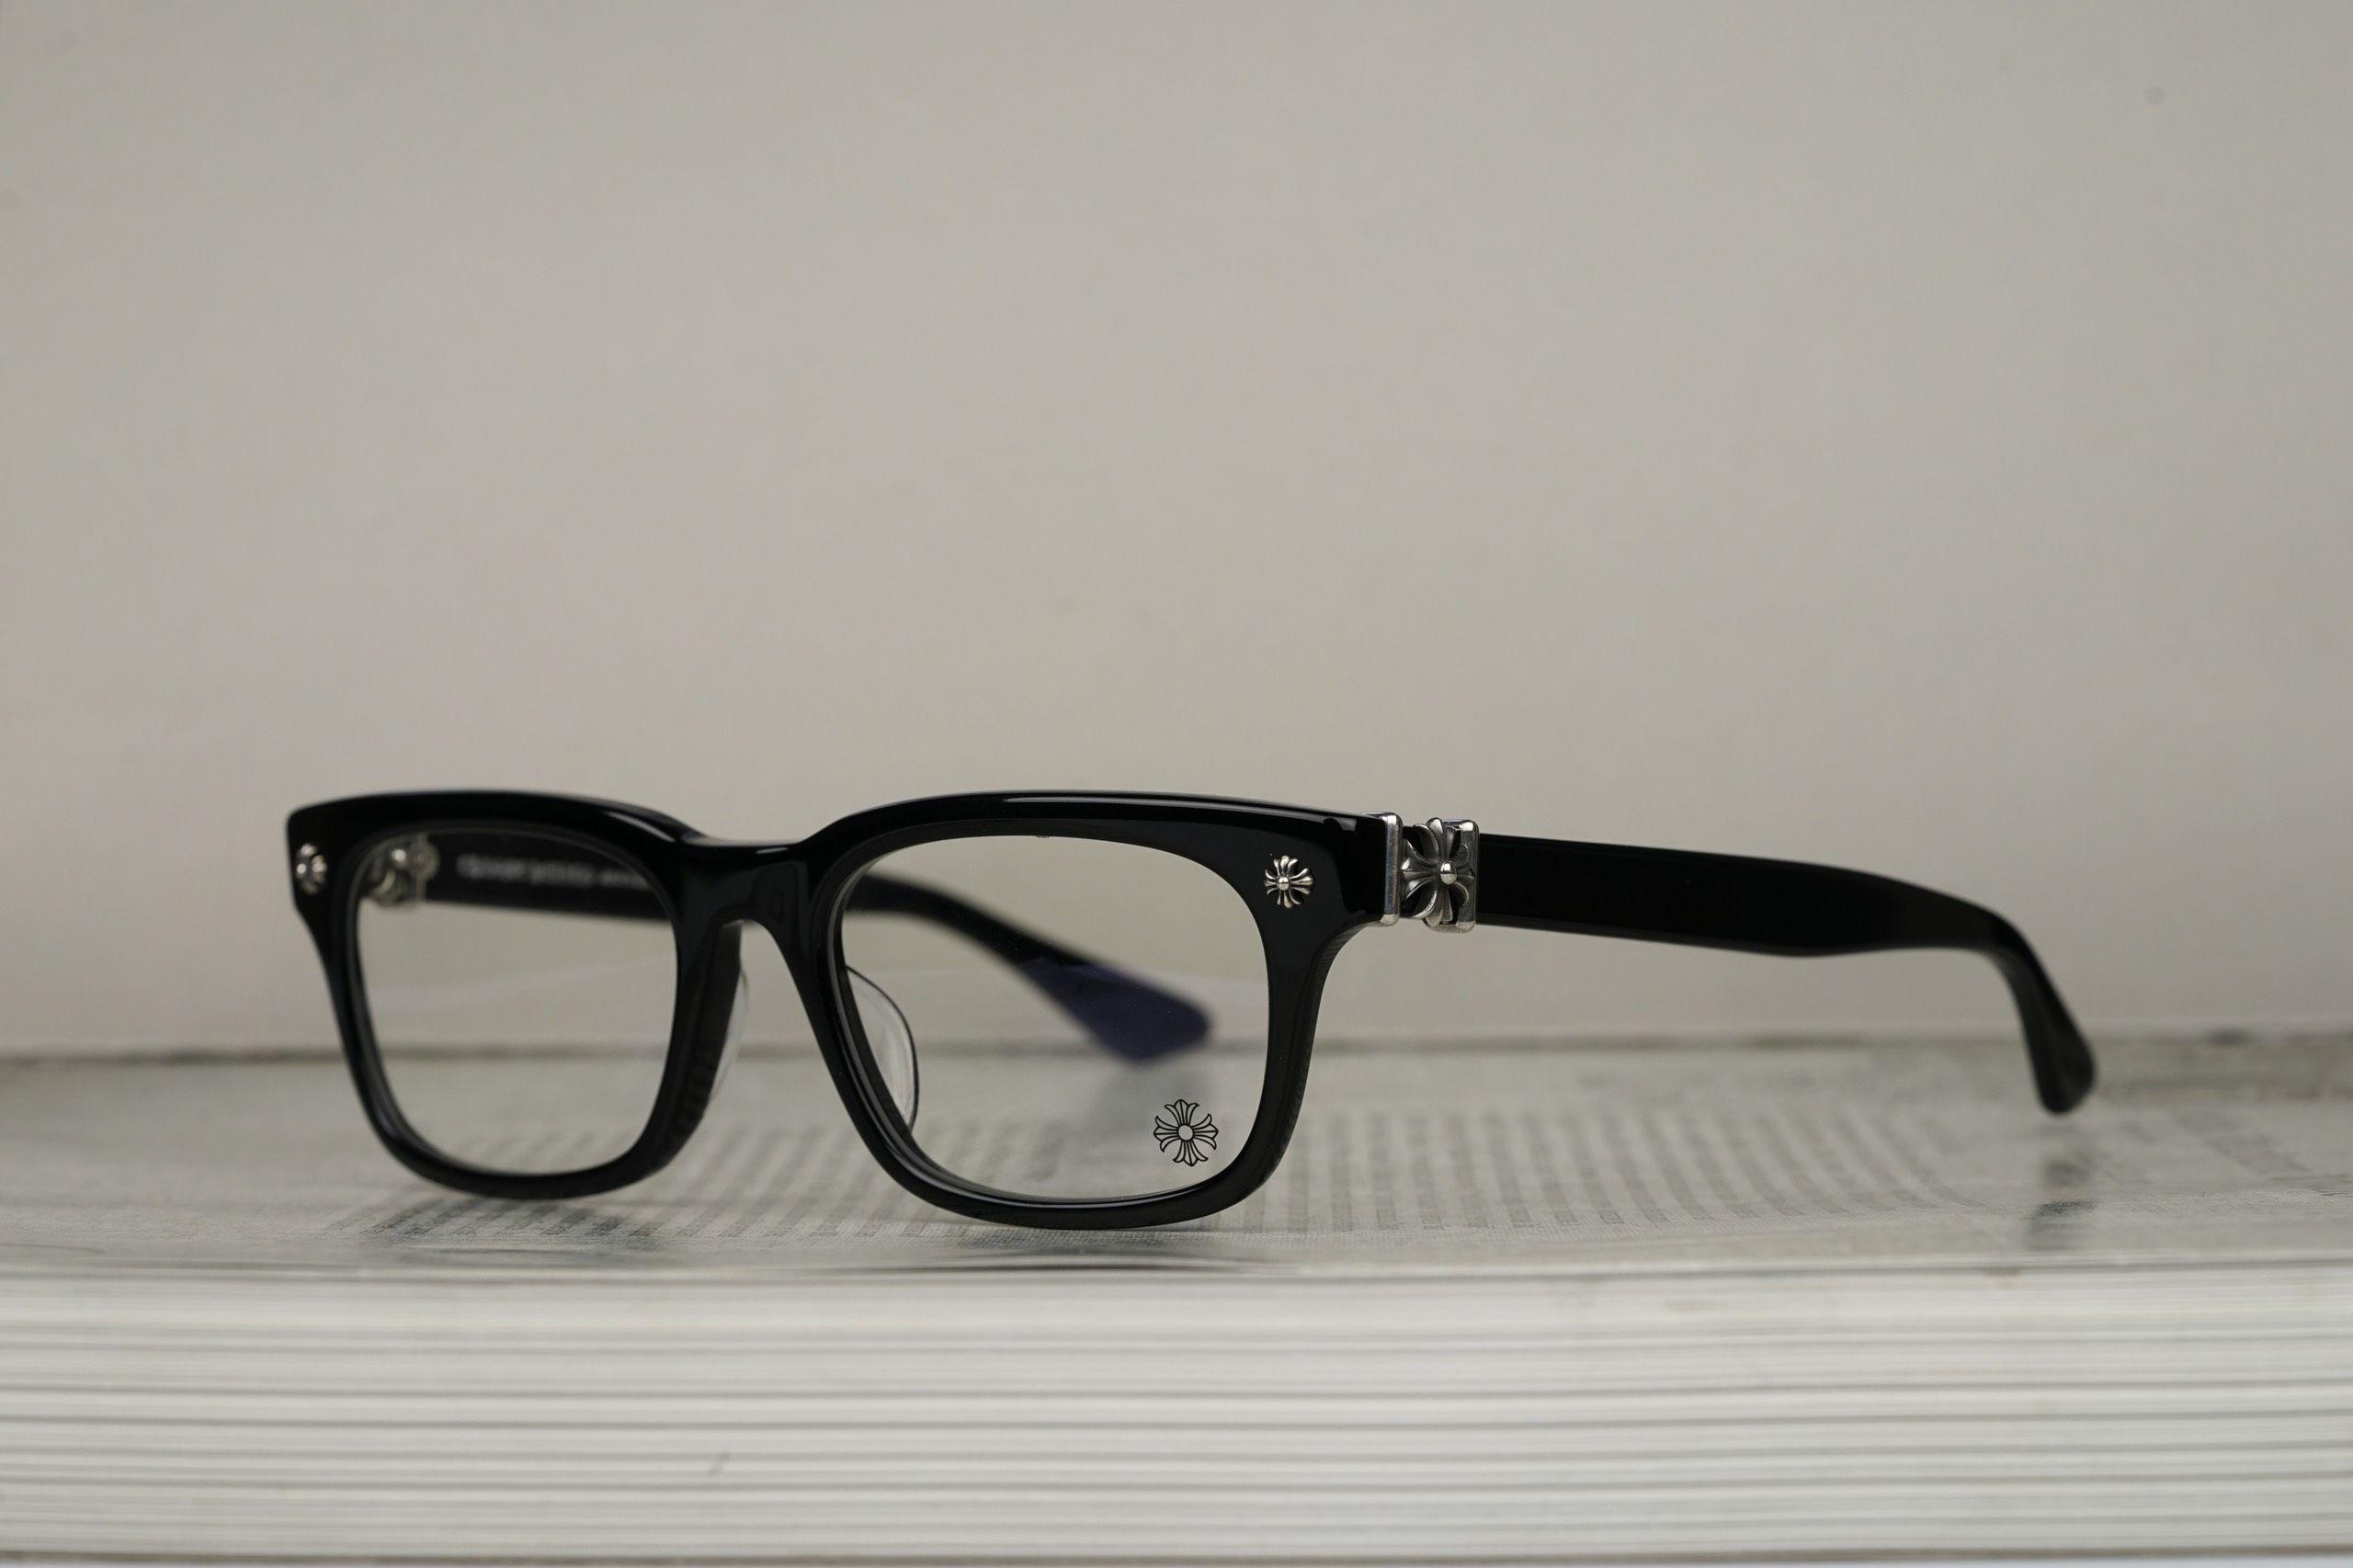 Chrome Hearts Glasses Sunglasses VAGILLIONAIRE I – BLACKSHINY SILVER 3